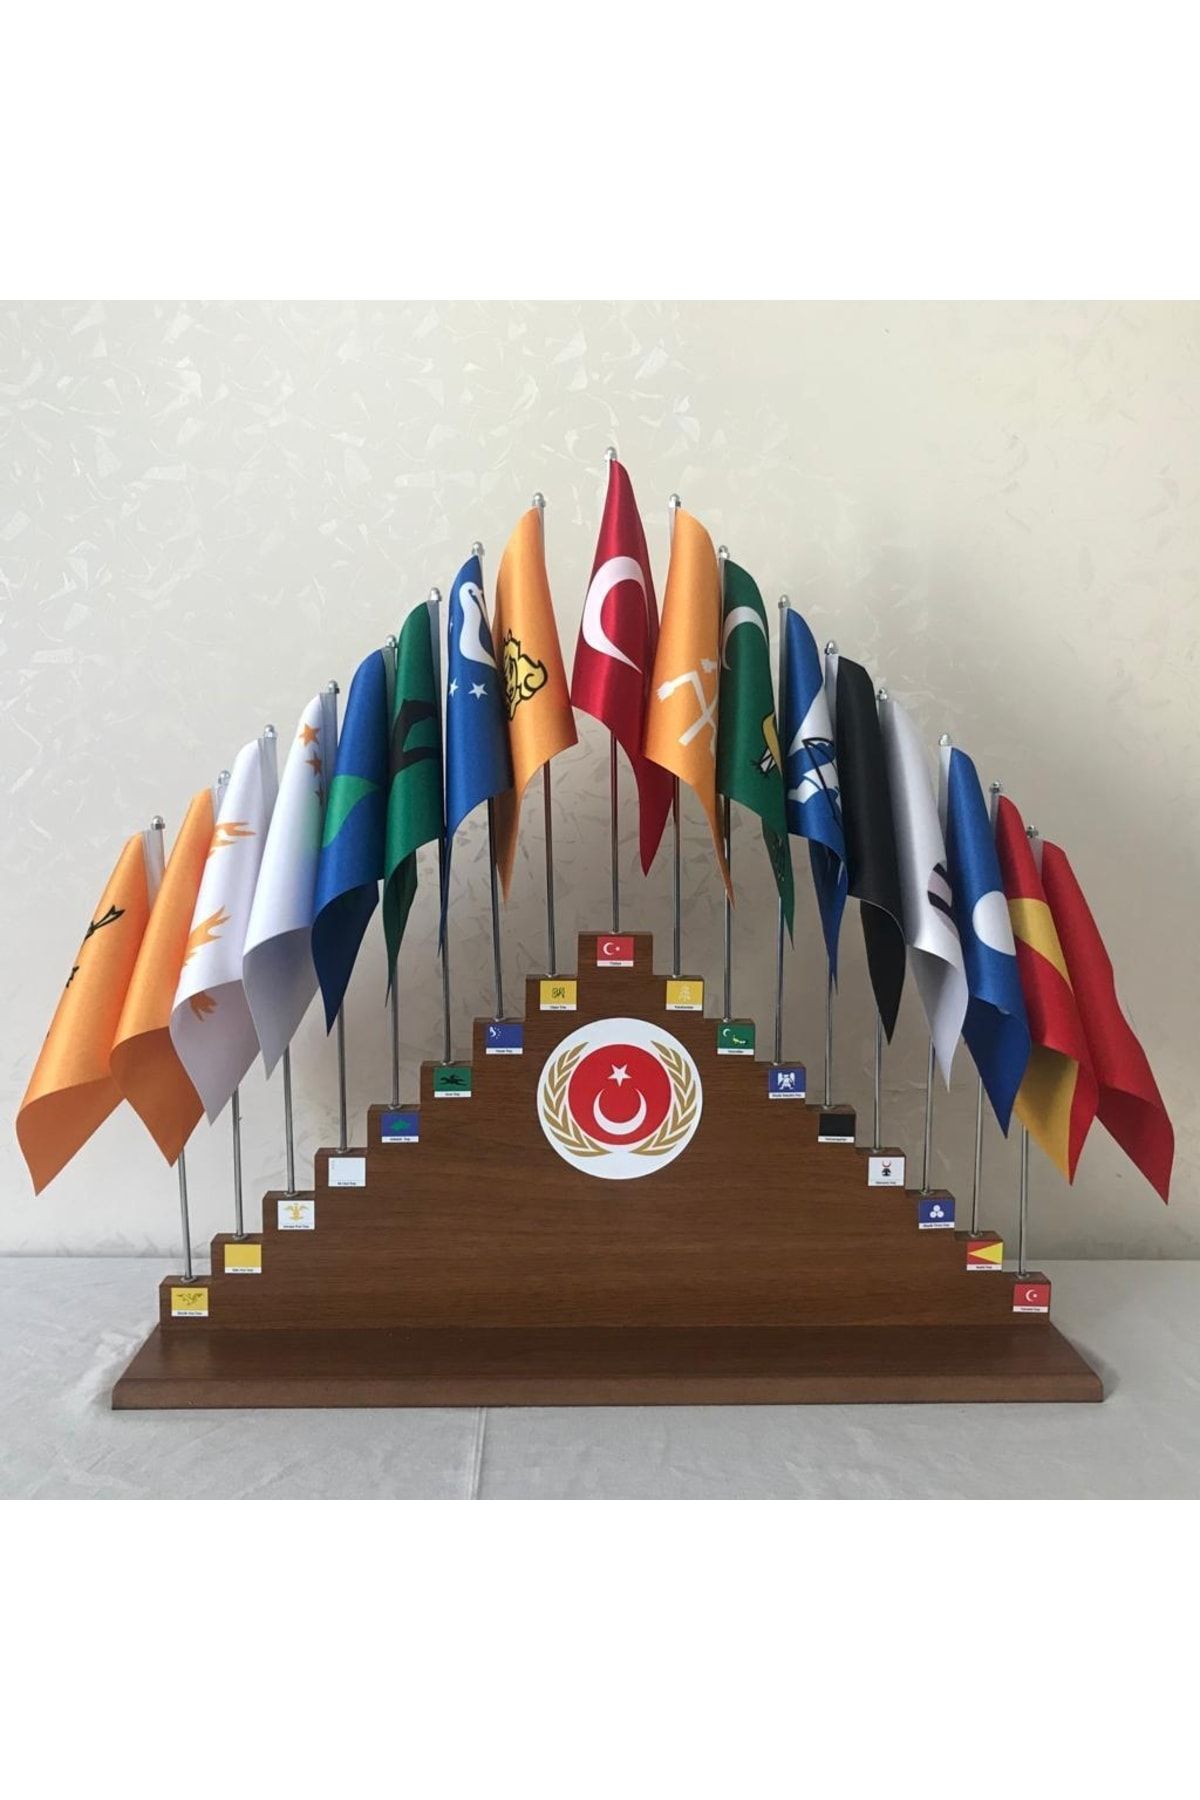 alem 17 li büyük türk devletleri bayrak seti fiyatı yorumları trendyol